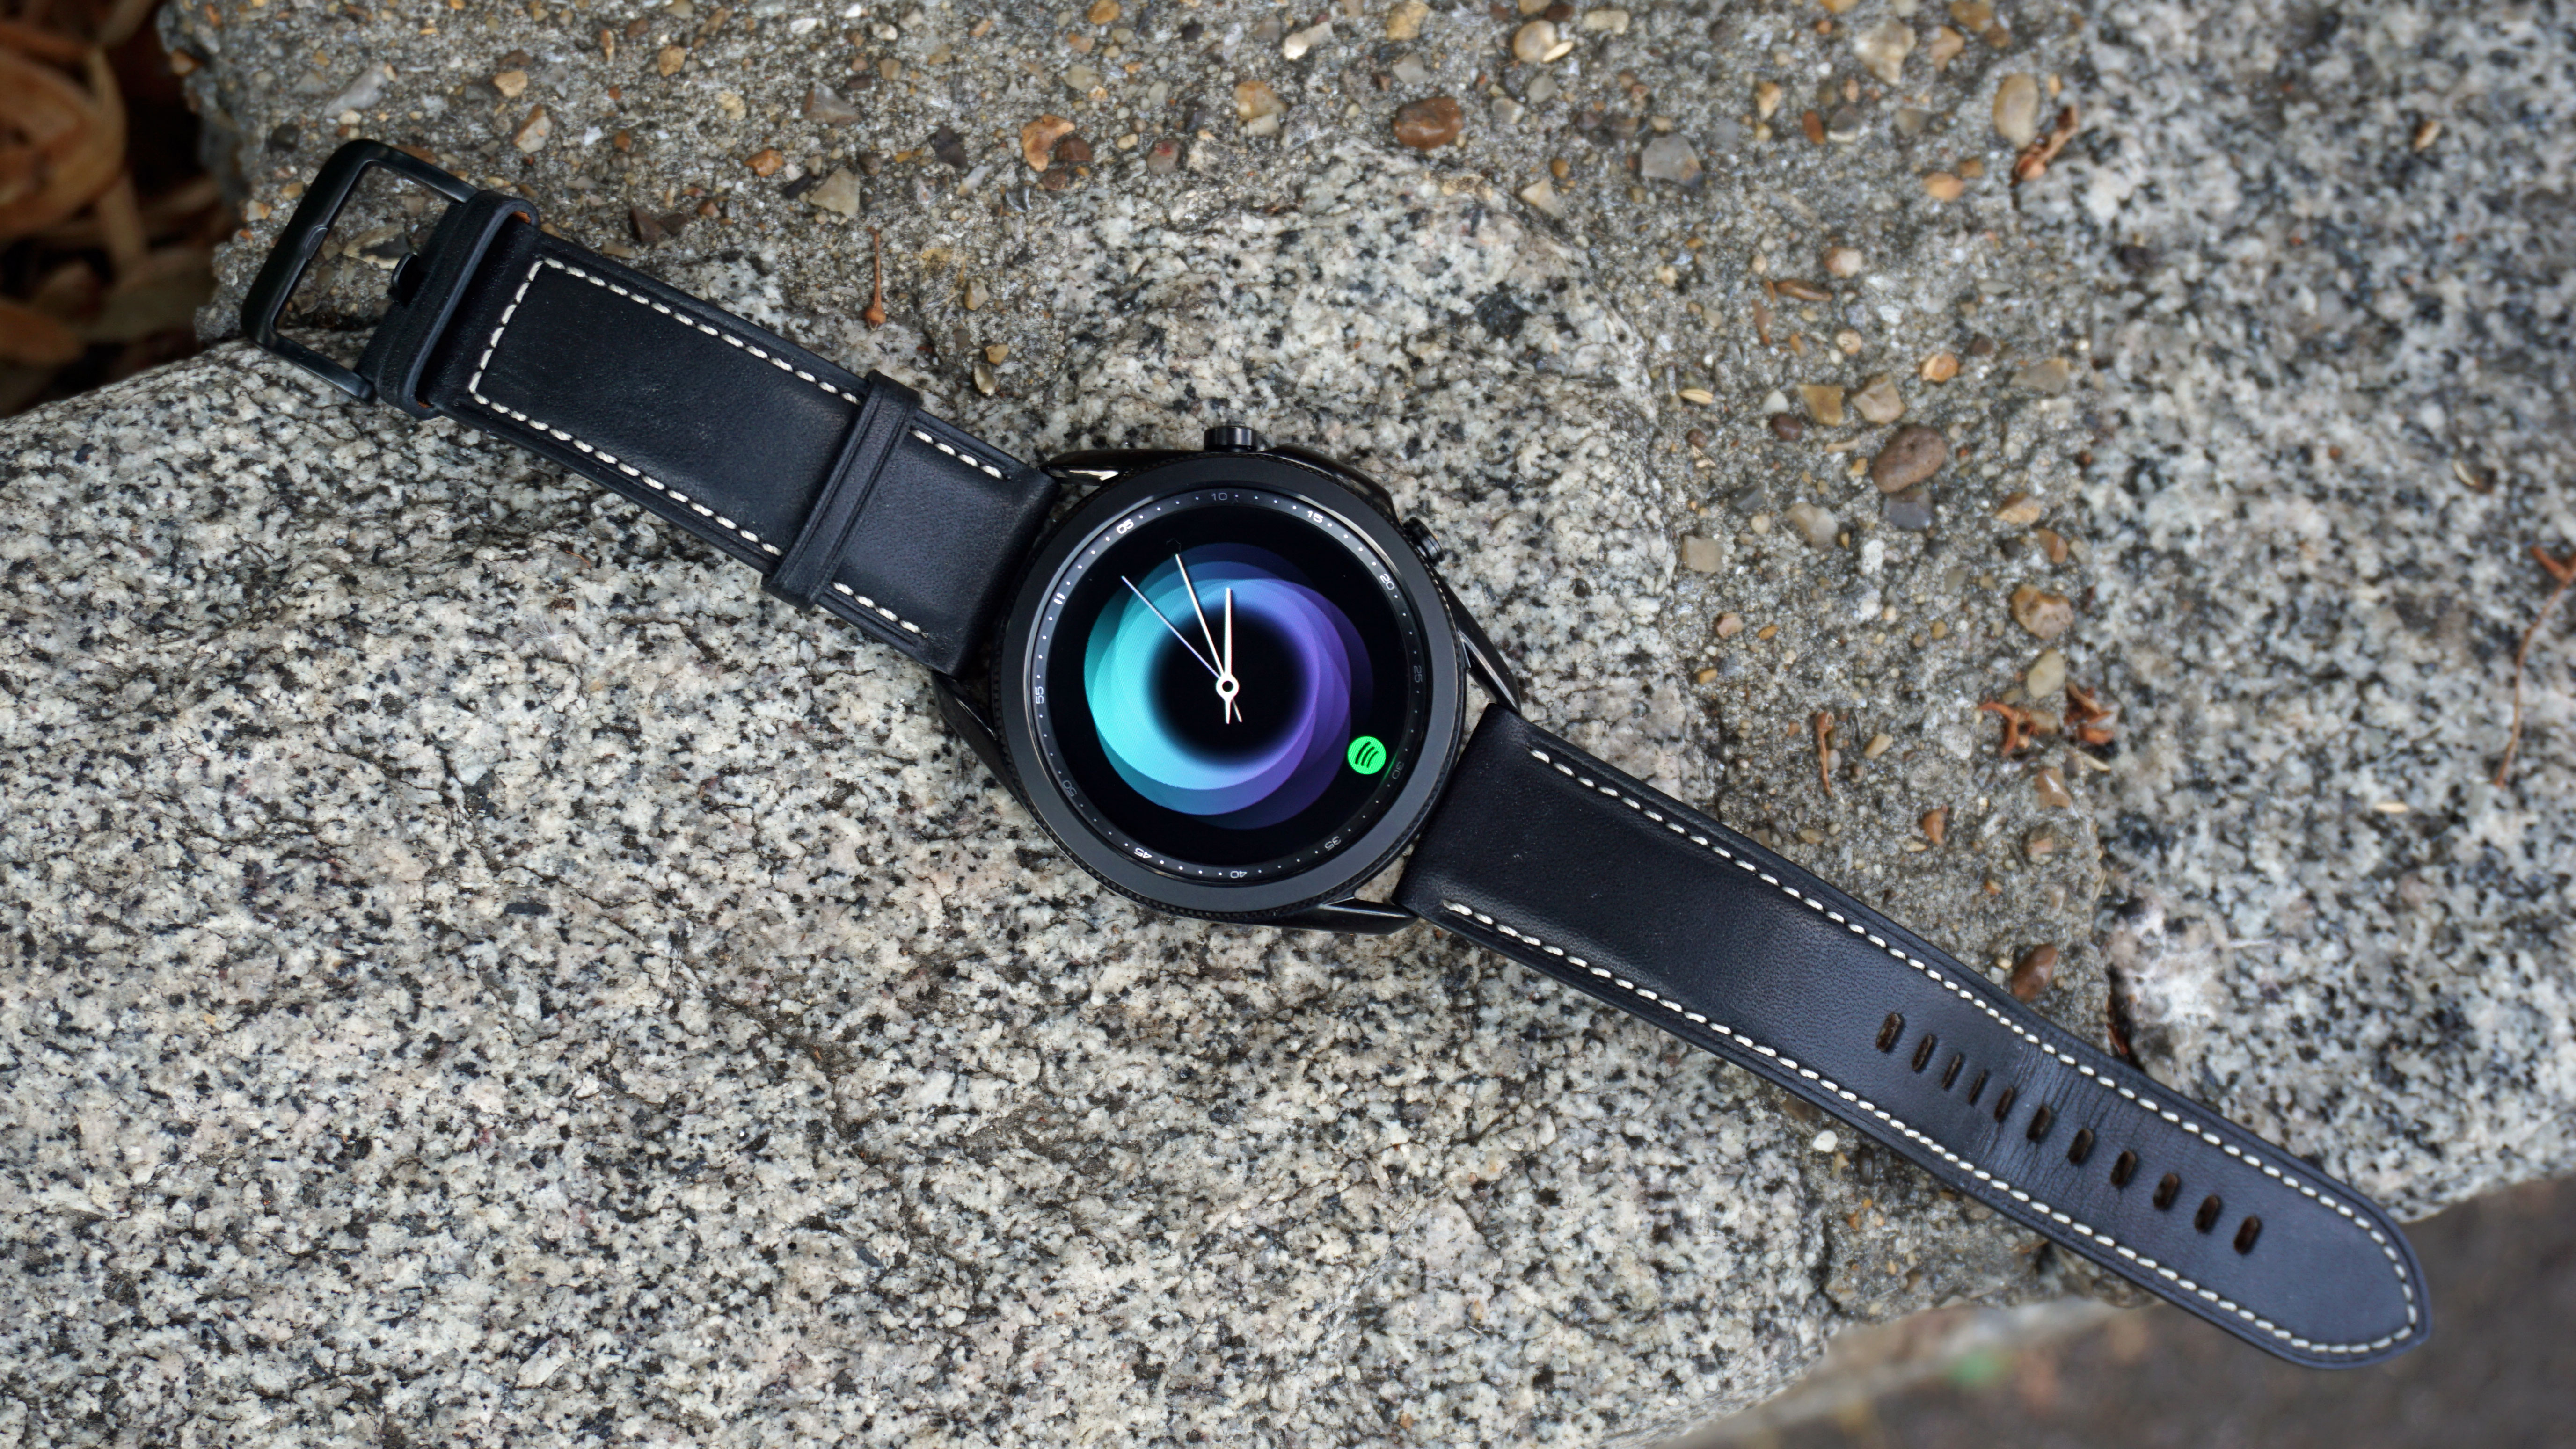 Samsung Watch 3 45mm Купить Москва